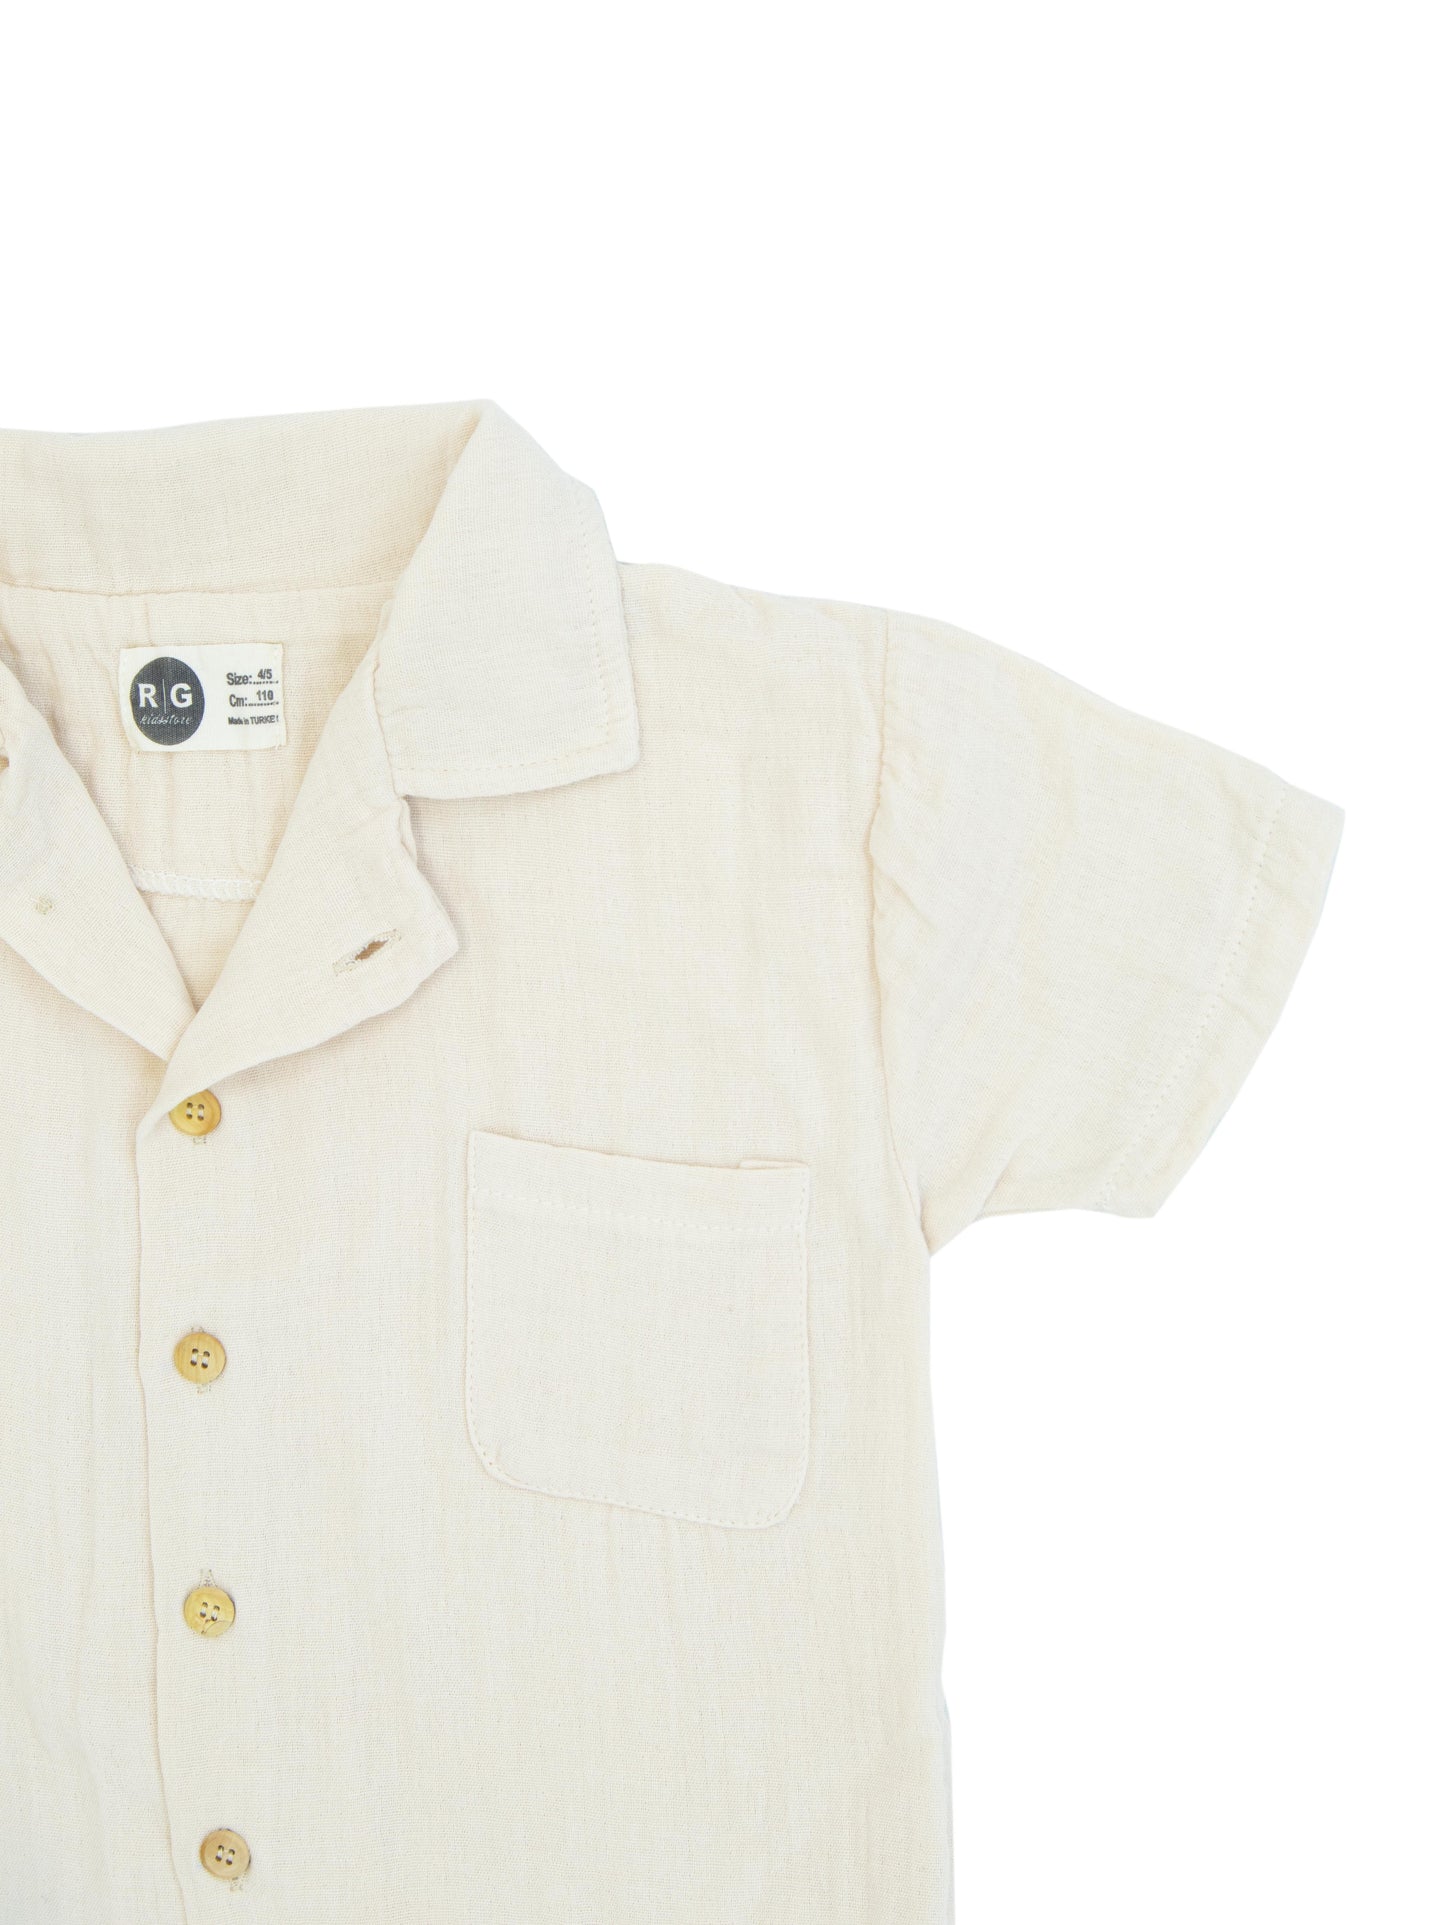 Детская рубашка из 100% органического муслина с короткими рукавами и пуговицами спереди